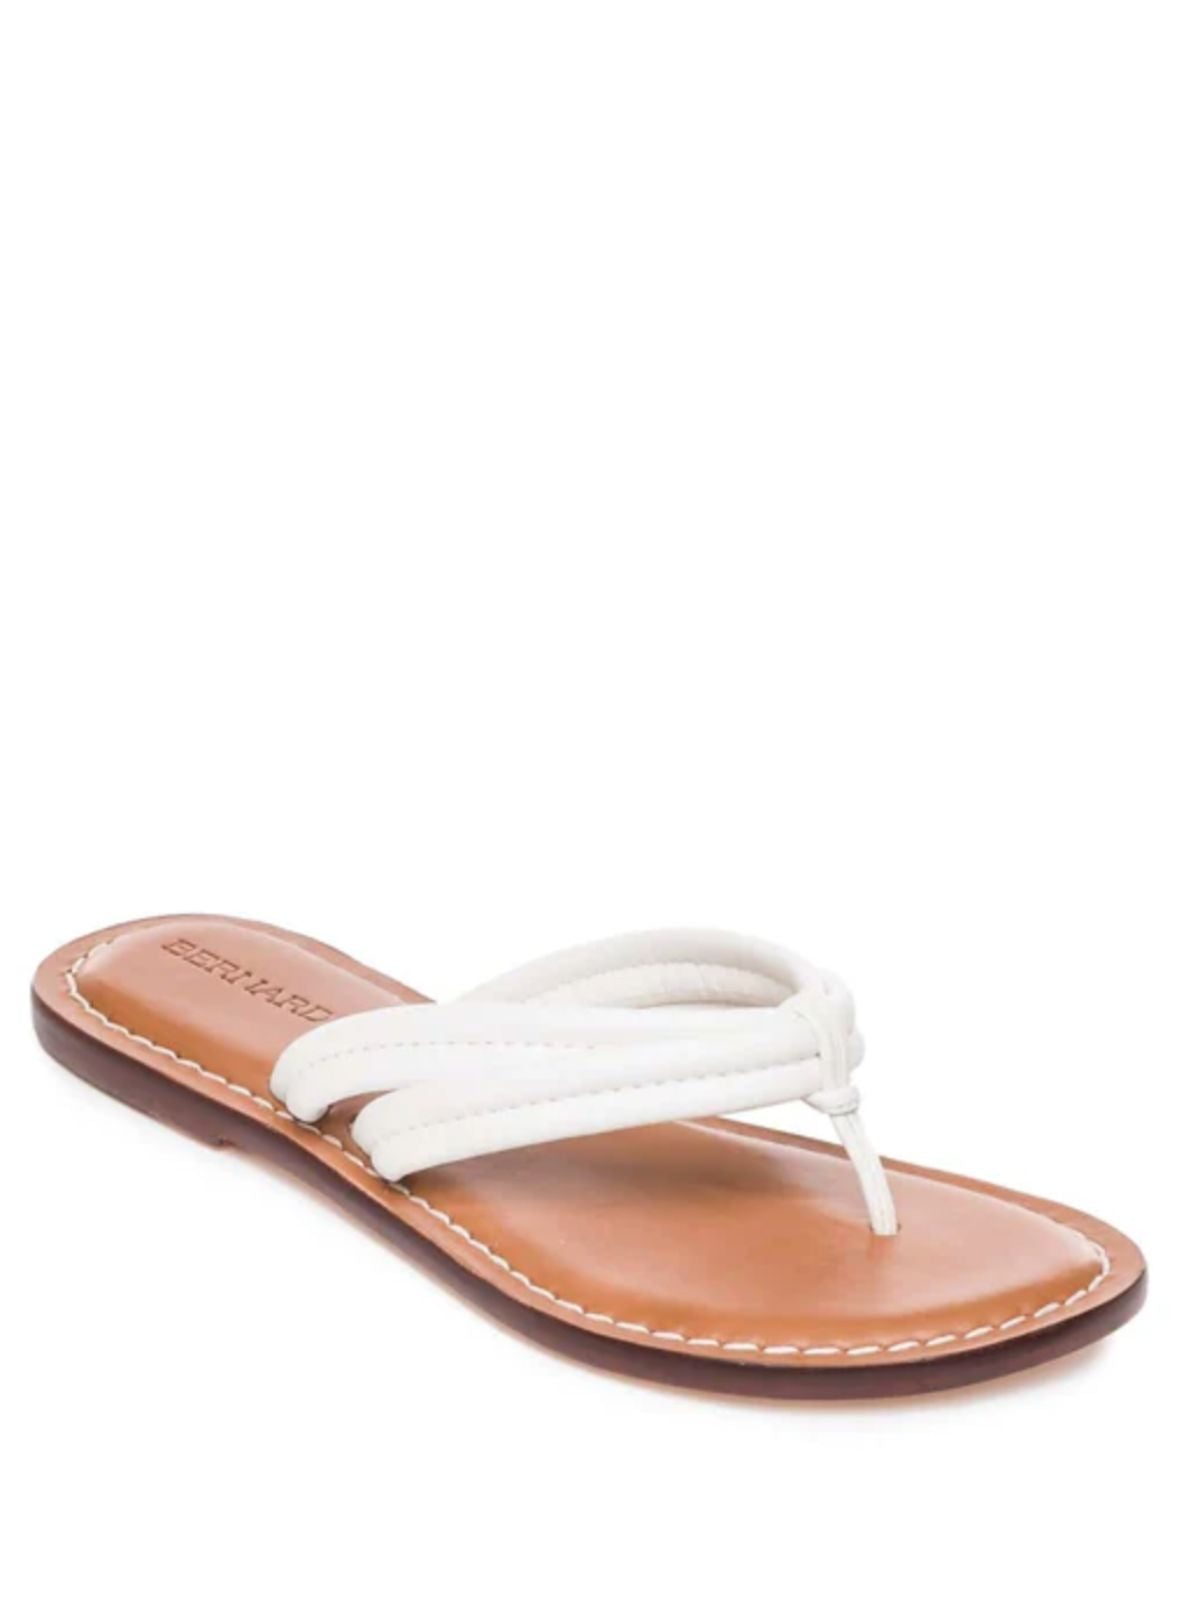 Miami Sandal-White